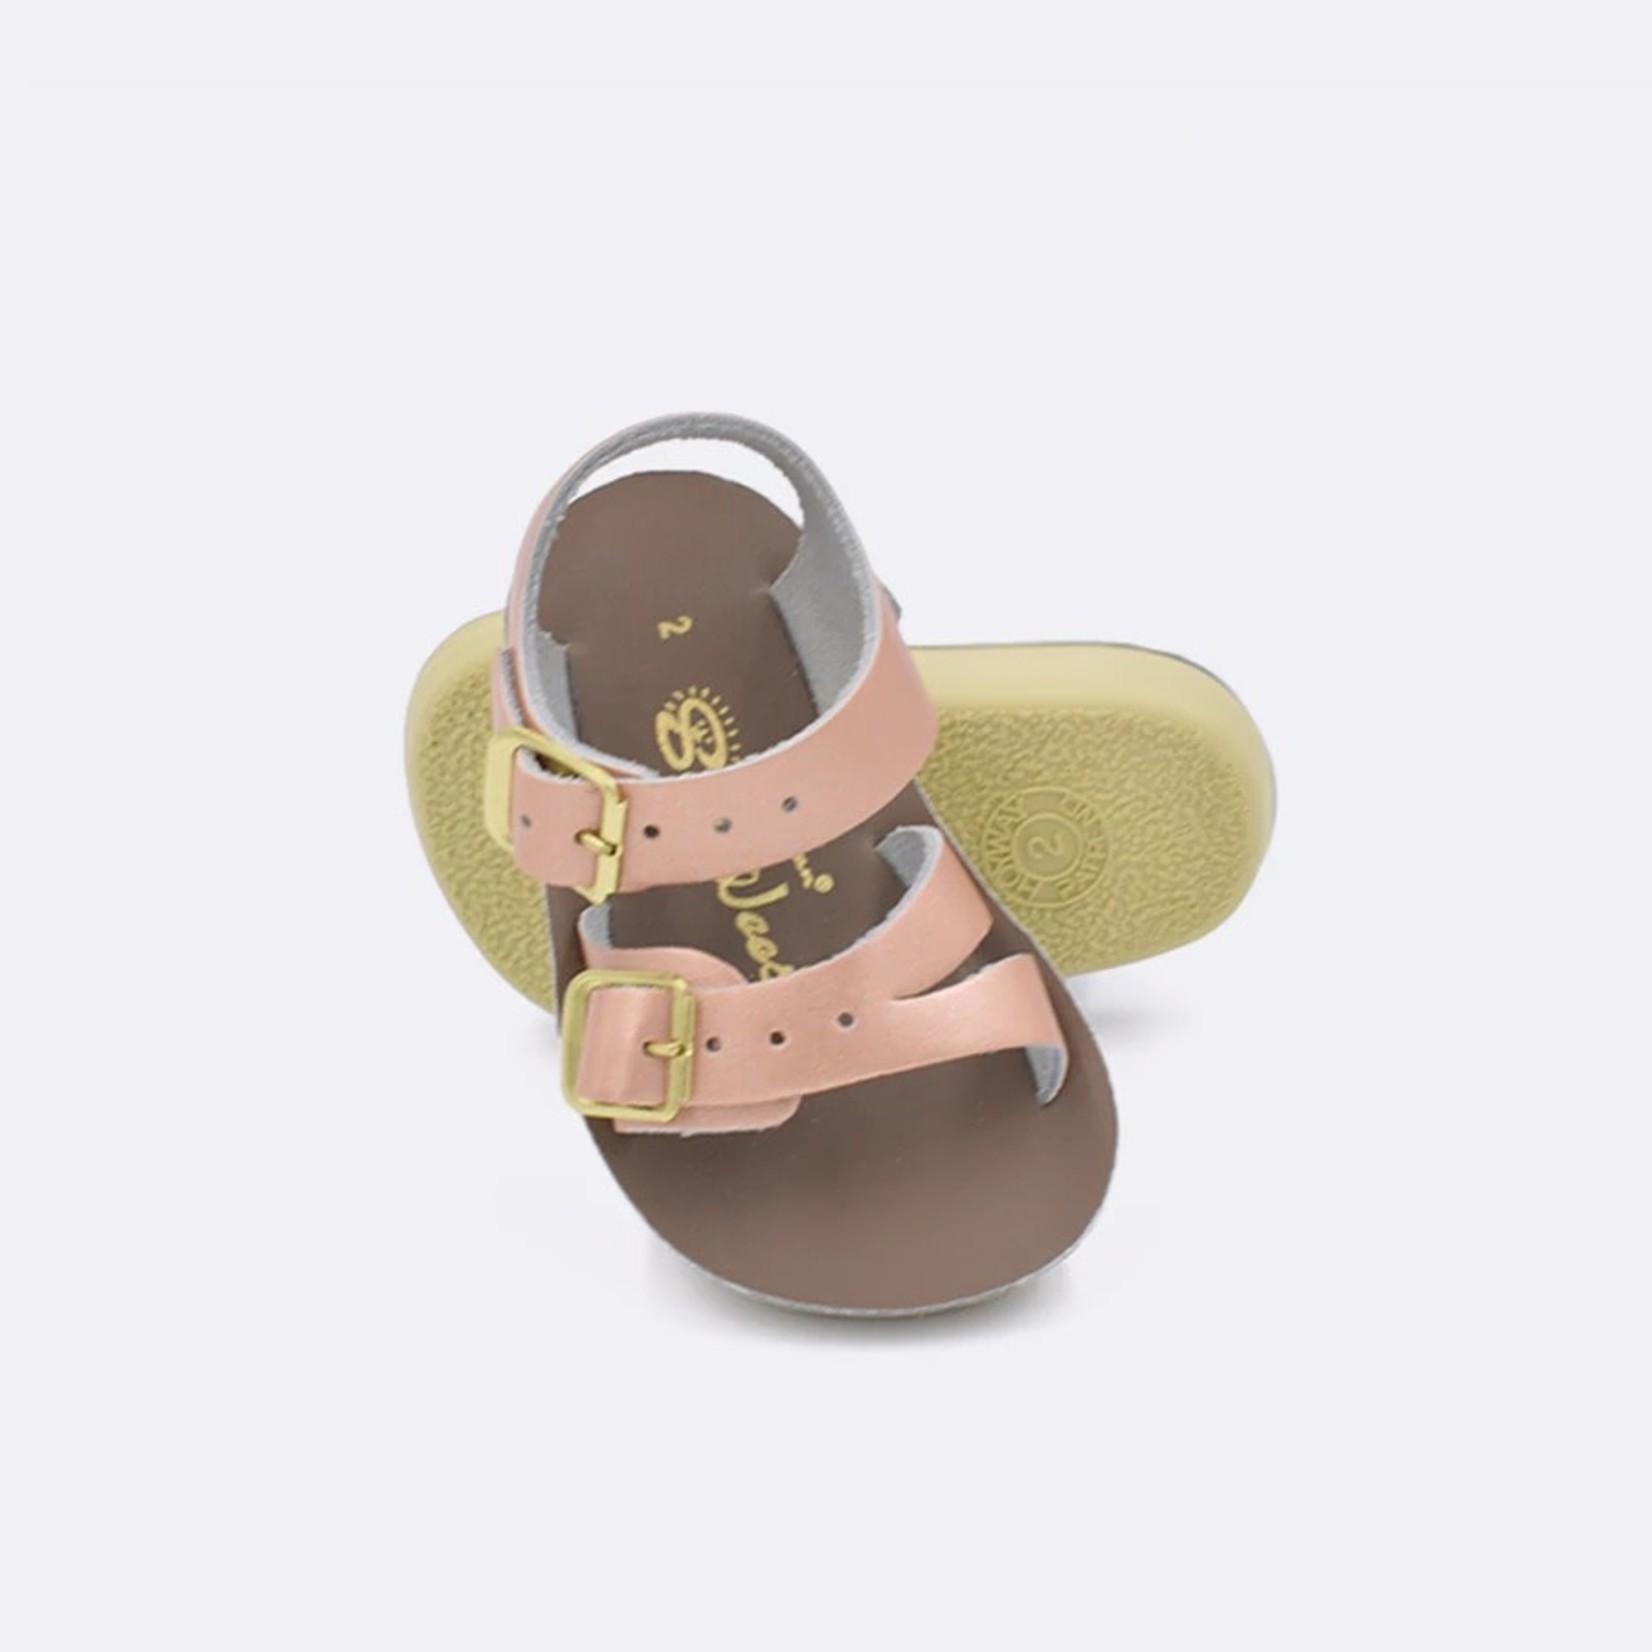 Saltwater sandals rose gold toddler size 8 | eBay